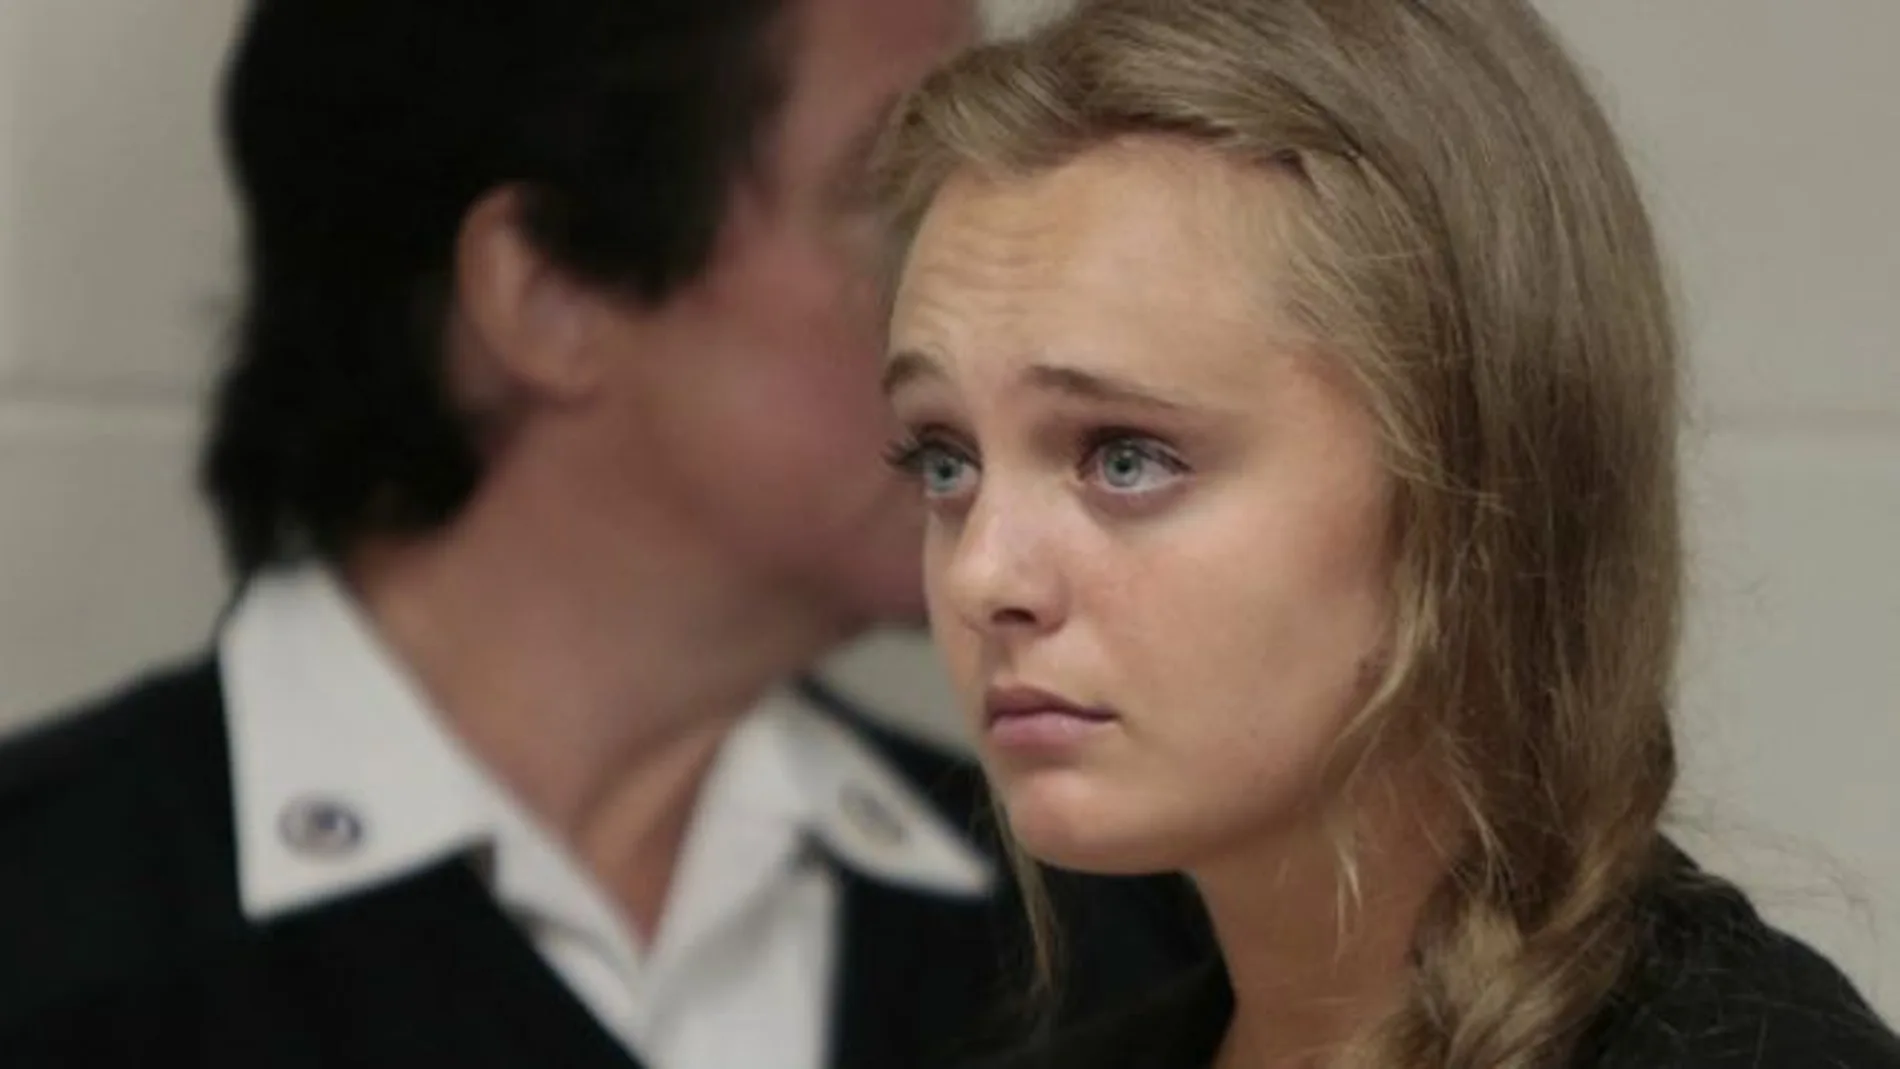 Michelle Carter, de 20 años, está siendo juzgada por instar a su novio Conrad Roy, de 18 años, a suicidarse